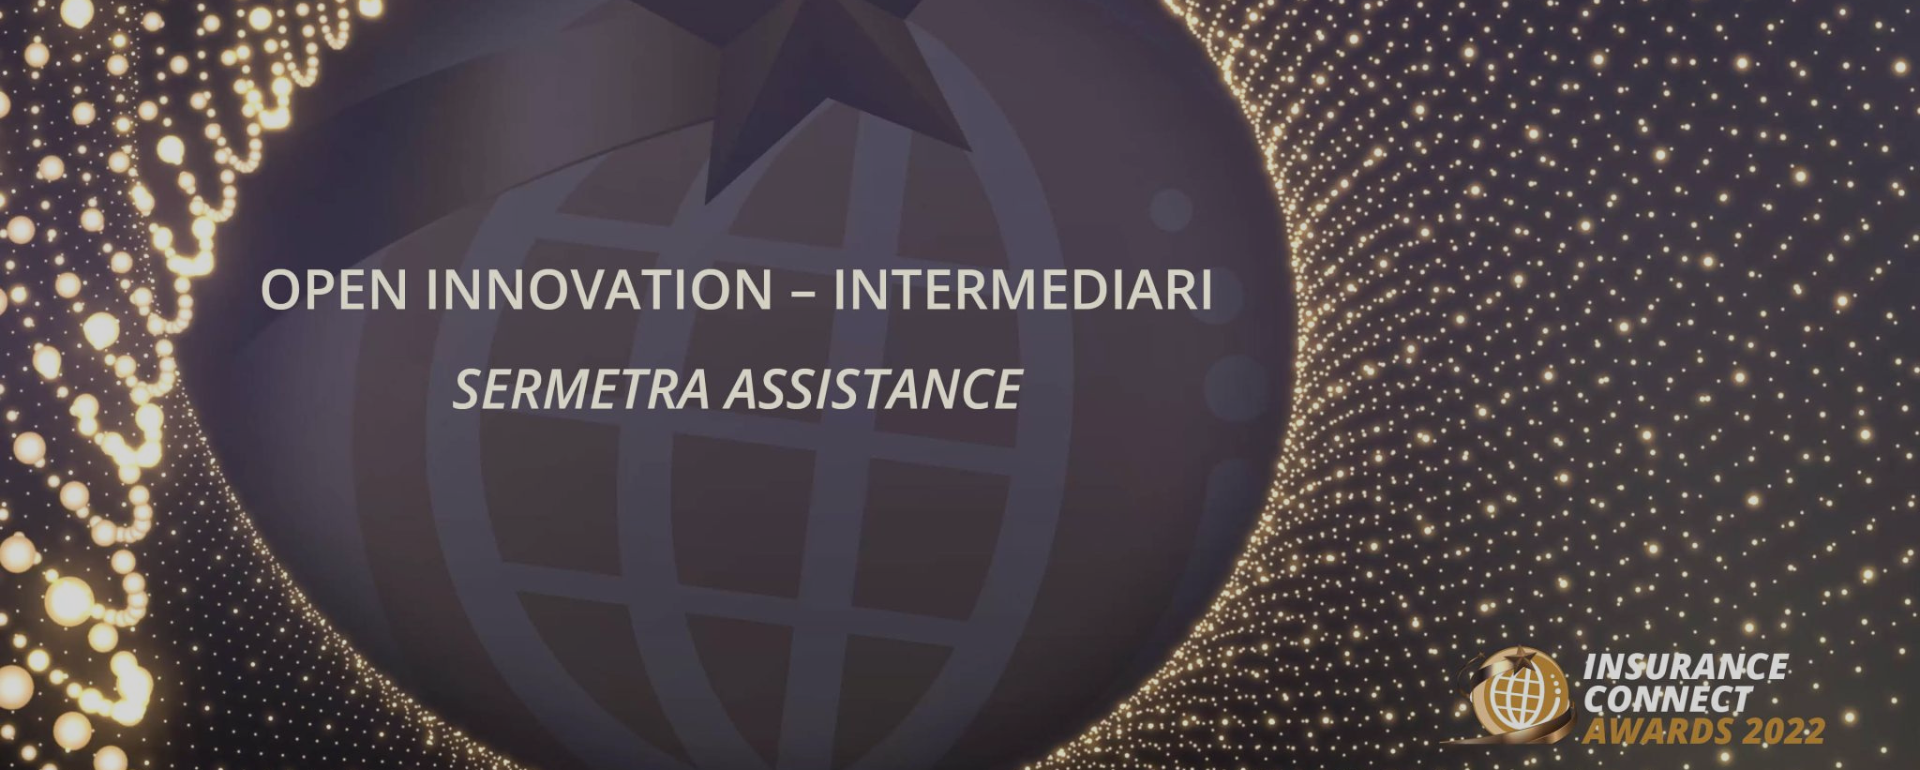 La premiazione di Sermetra Assistance all’Insurance Connect Award 2022